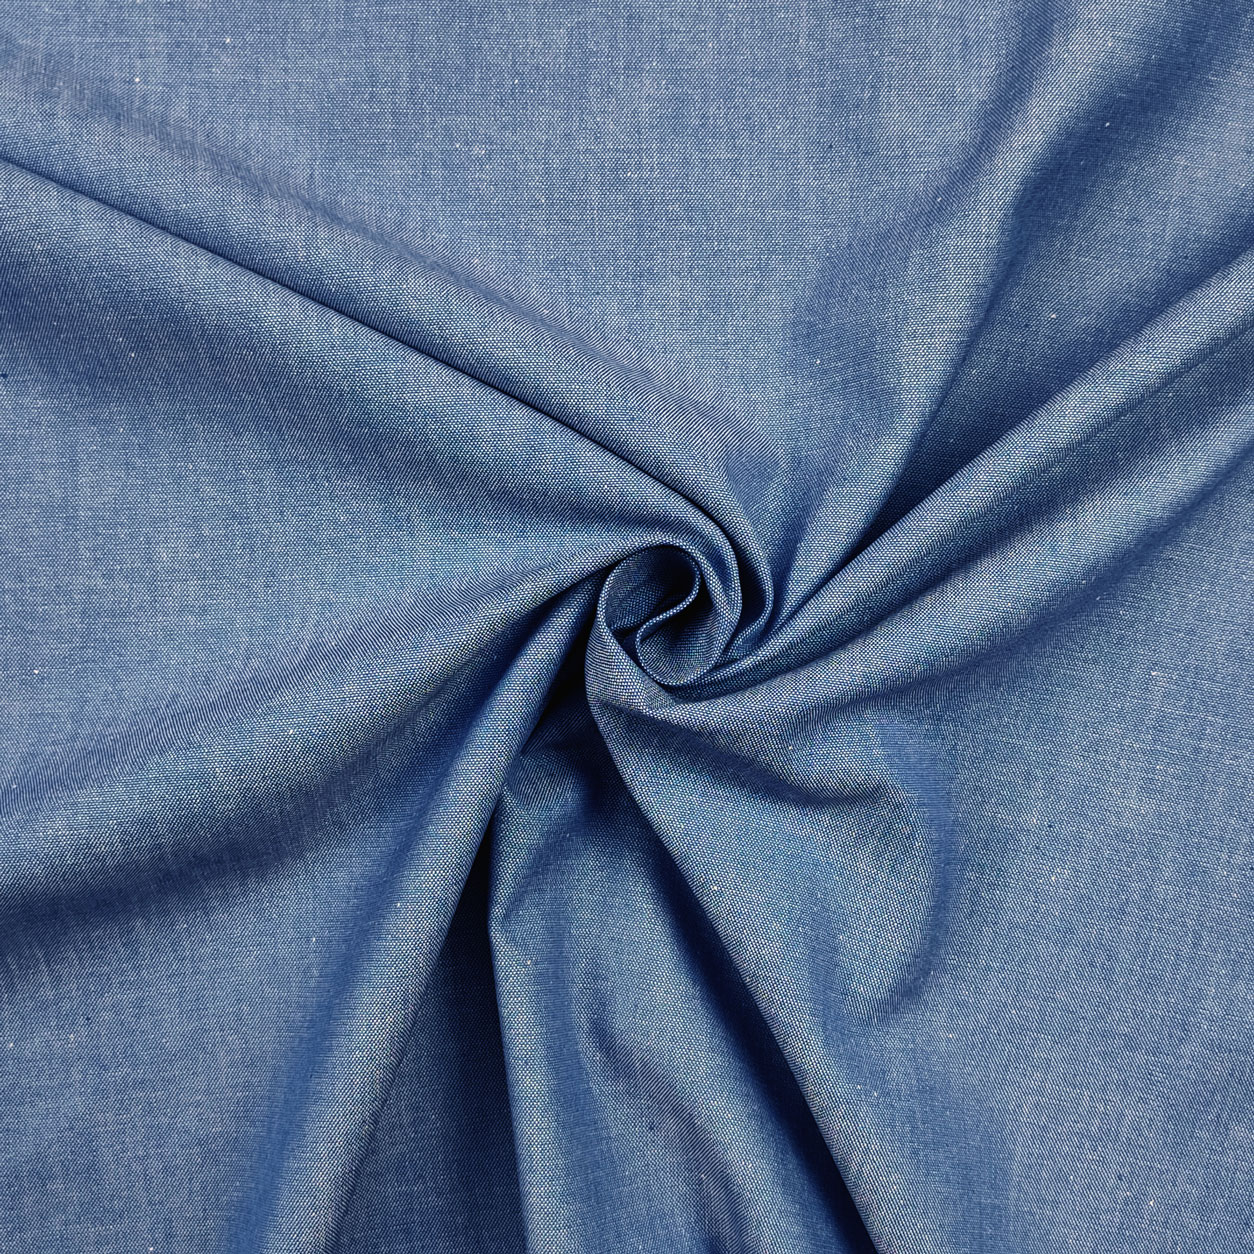 Tessuto jeans oxford azzurro medio chiaro